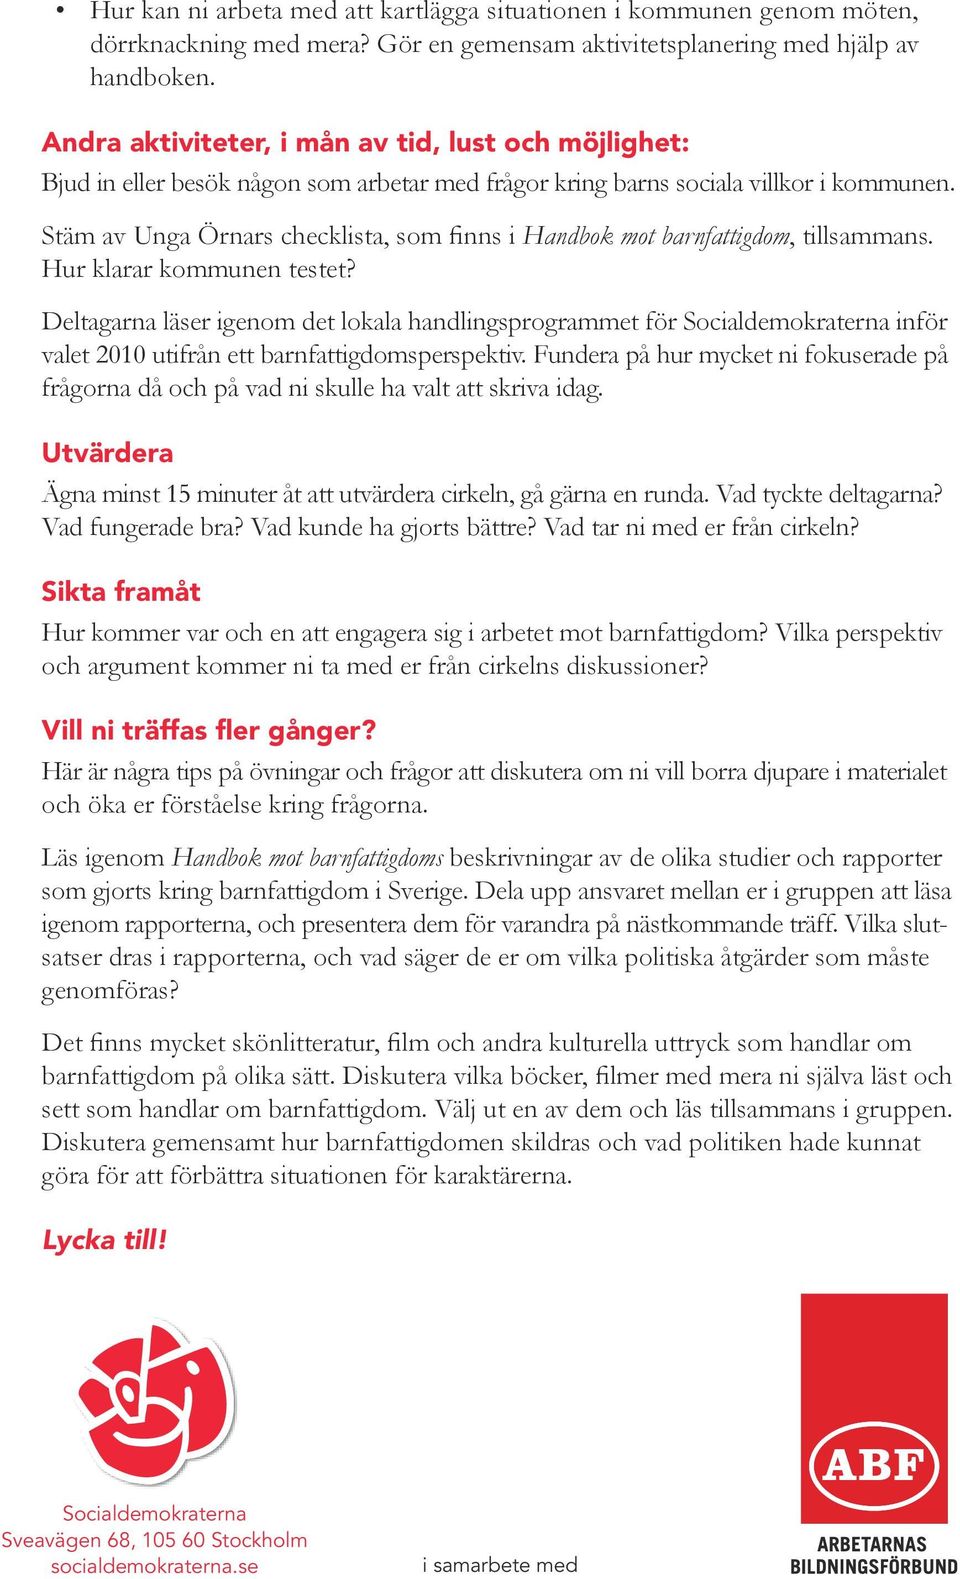 Stäm av Unga Örnars checklista, som finns i Handbok mot barnfattigdom, tillsammans. Hur klarar kommunen testet?